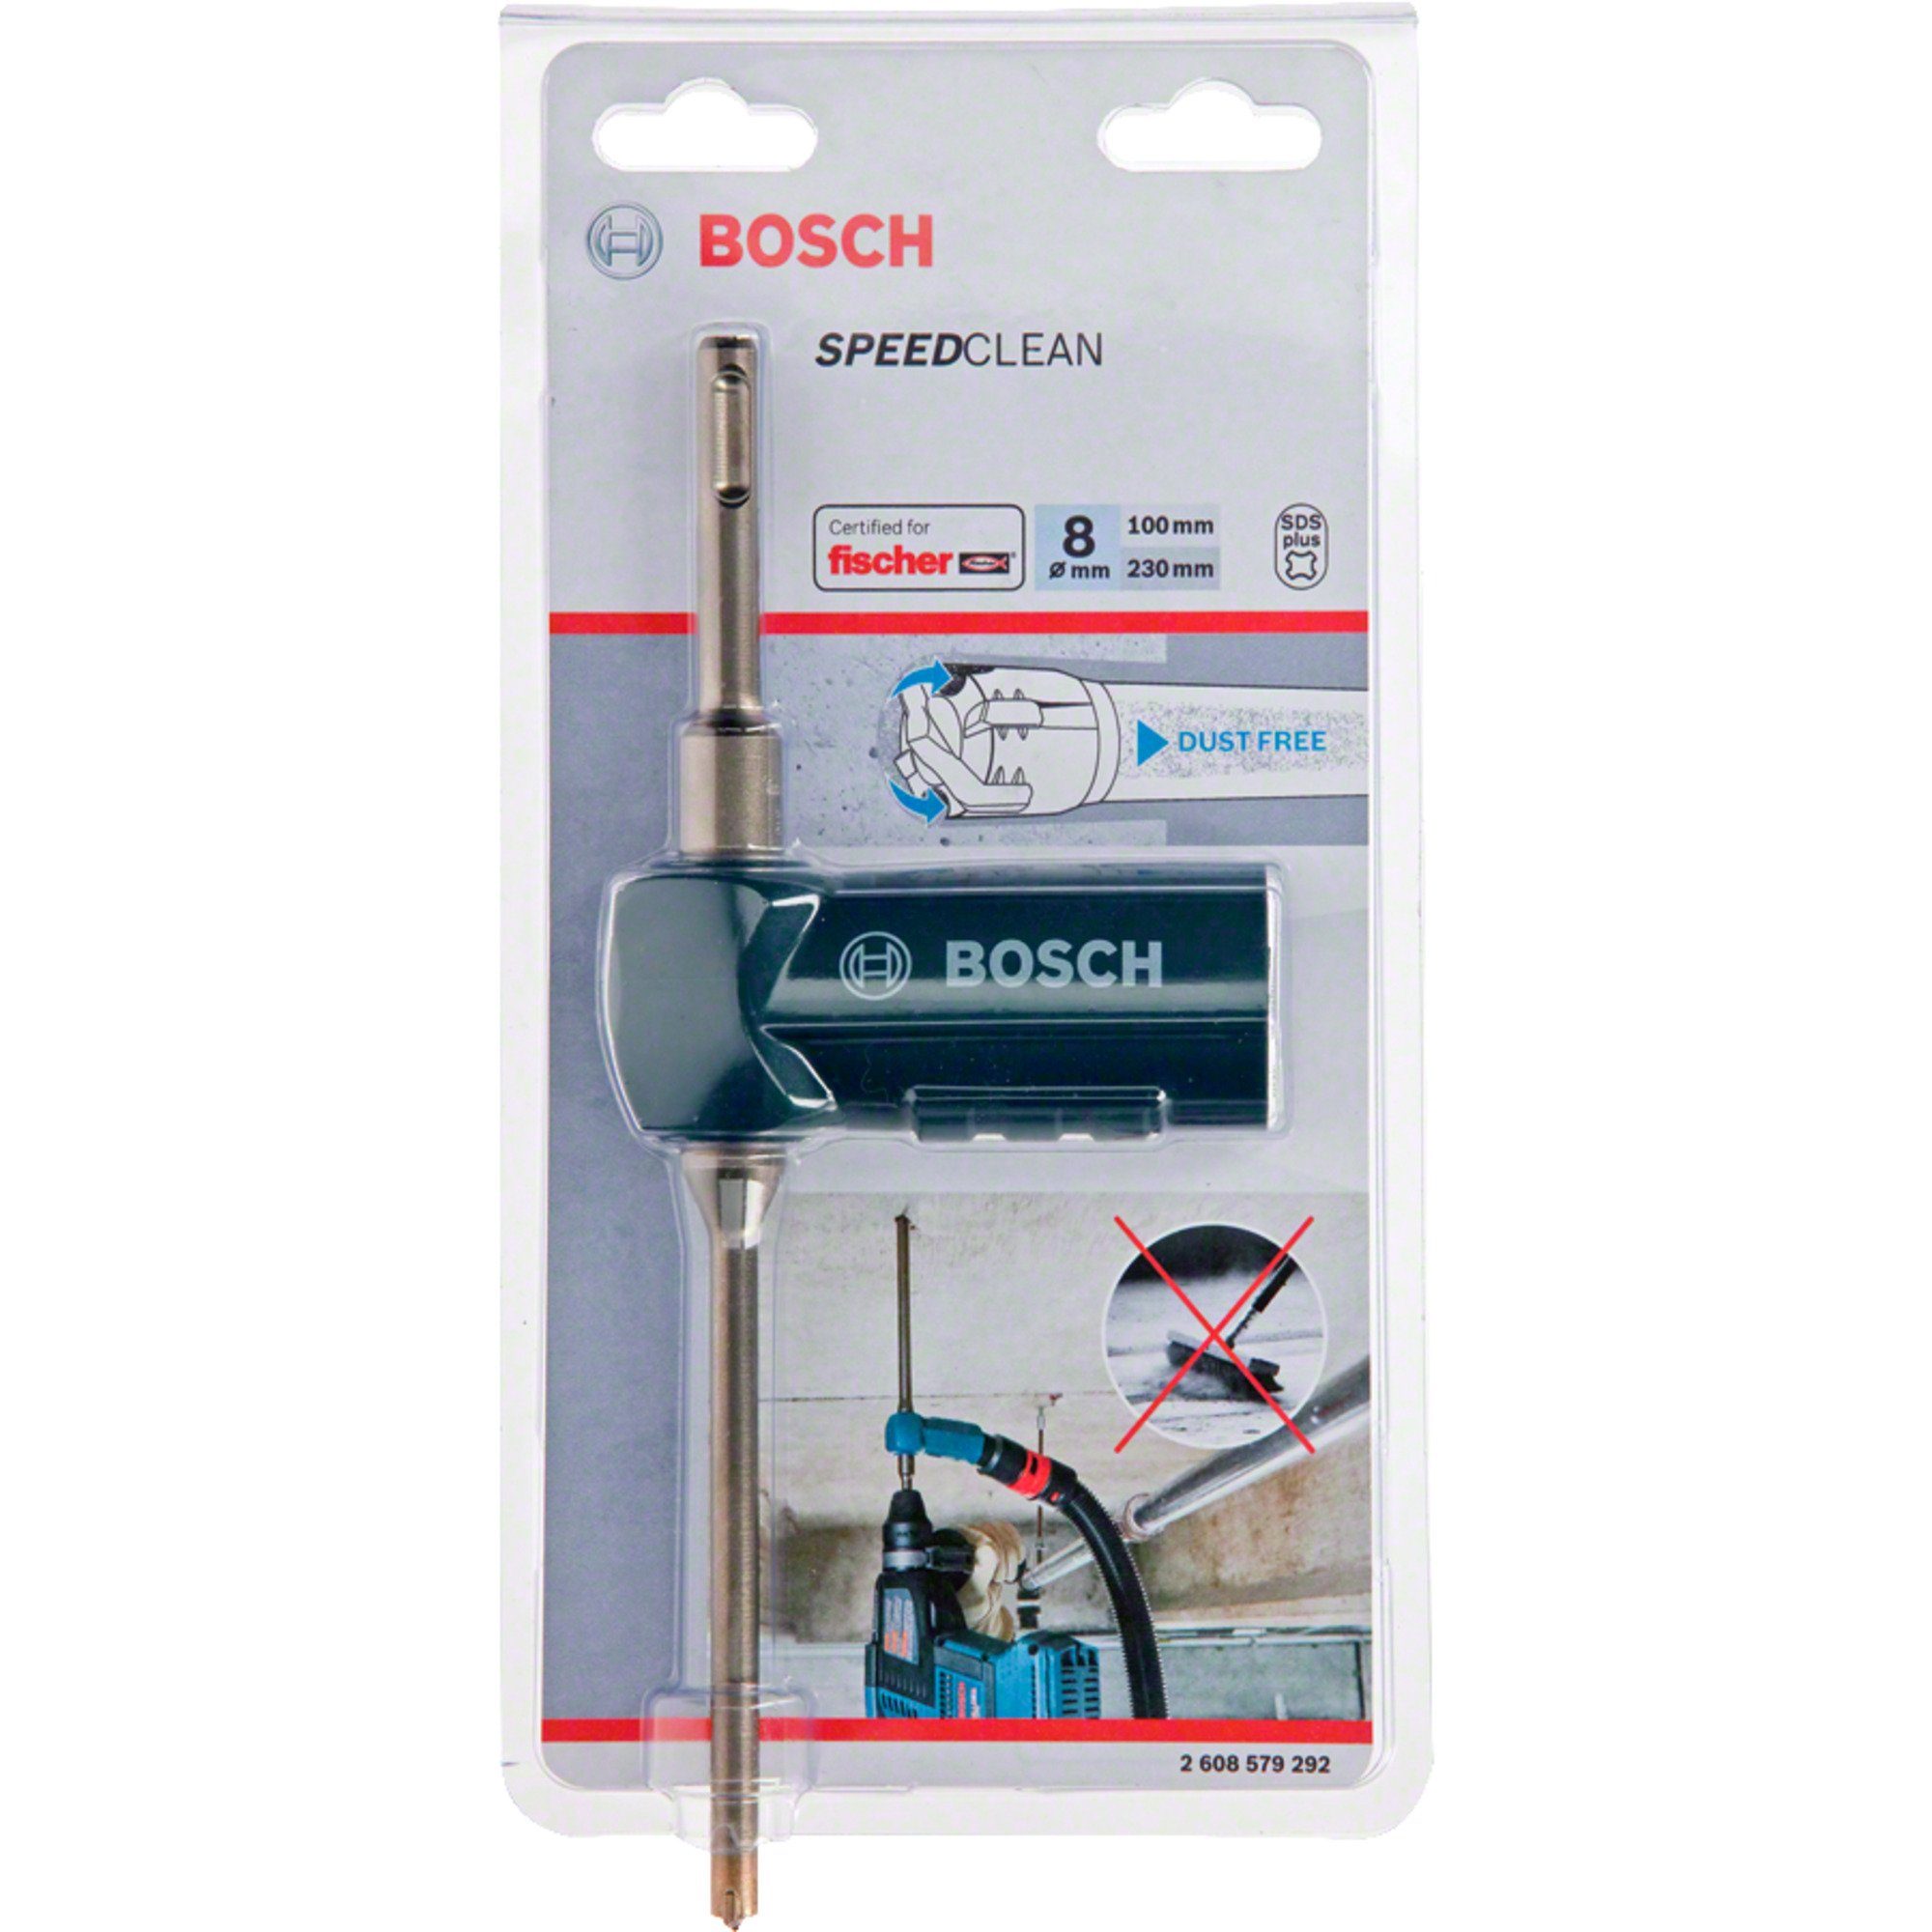 Bohrer- SDS Saugbohrer Professional Bosch plus-9 Speed Bitset BOSCH und